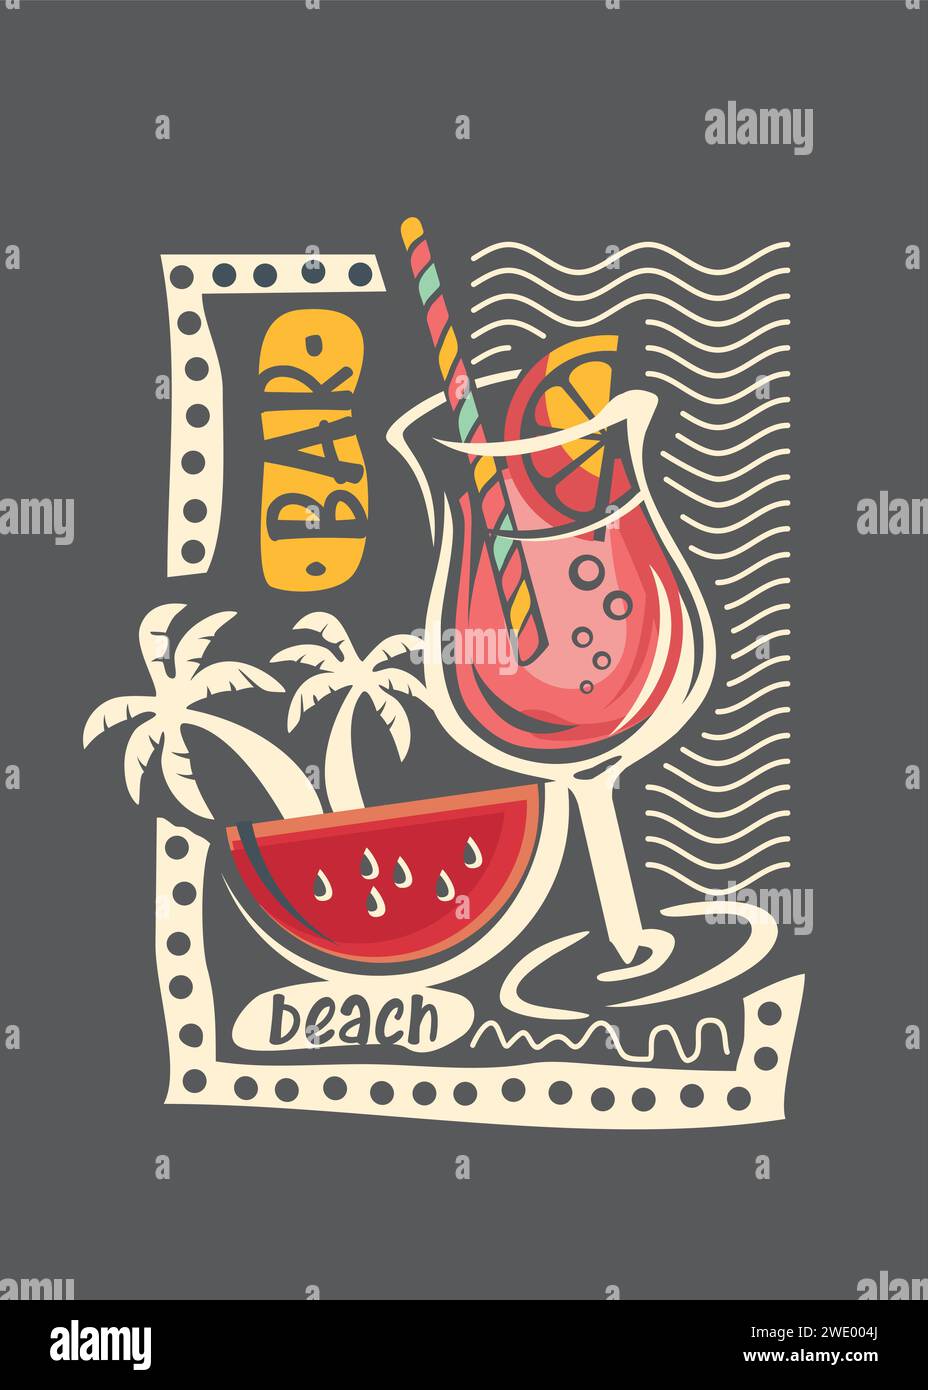 Stampa di abbigliamento per la maglietta estiva. Bicchiere da cocktail e modello artistico per banner a fette di anguria. Illustrazione vettoriale tropicale. Illustrazione Vettoriale